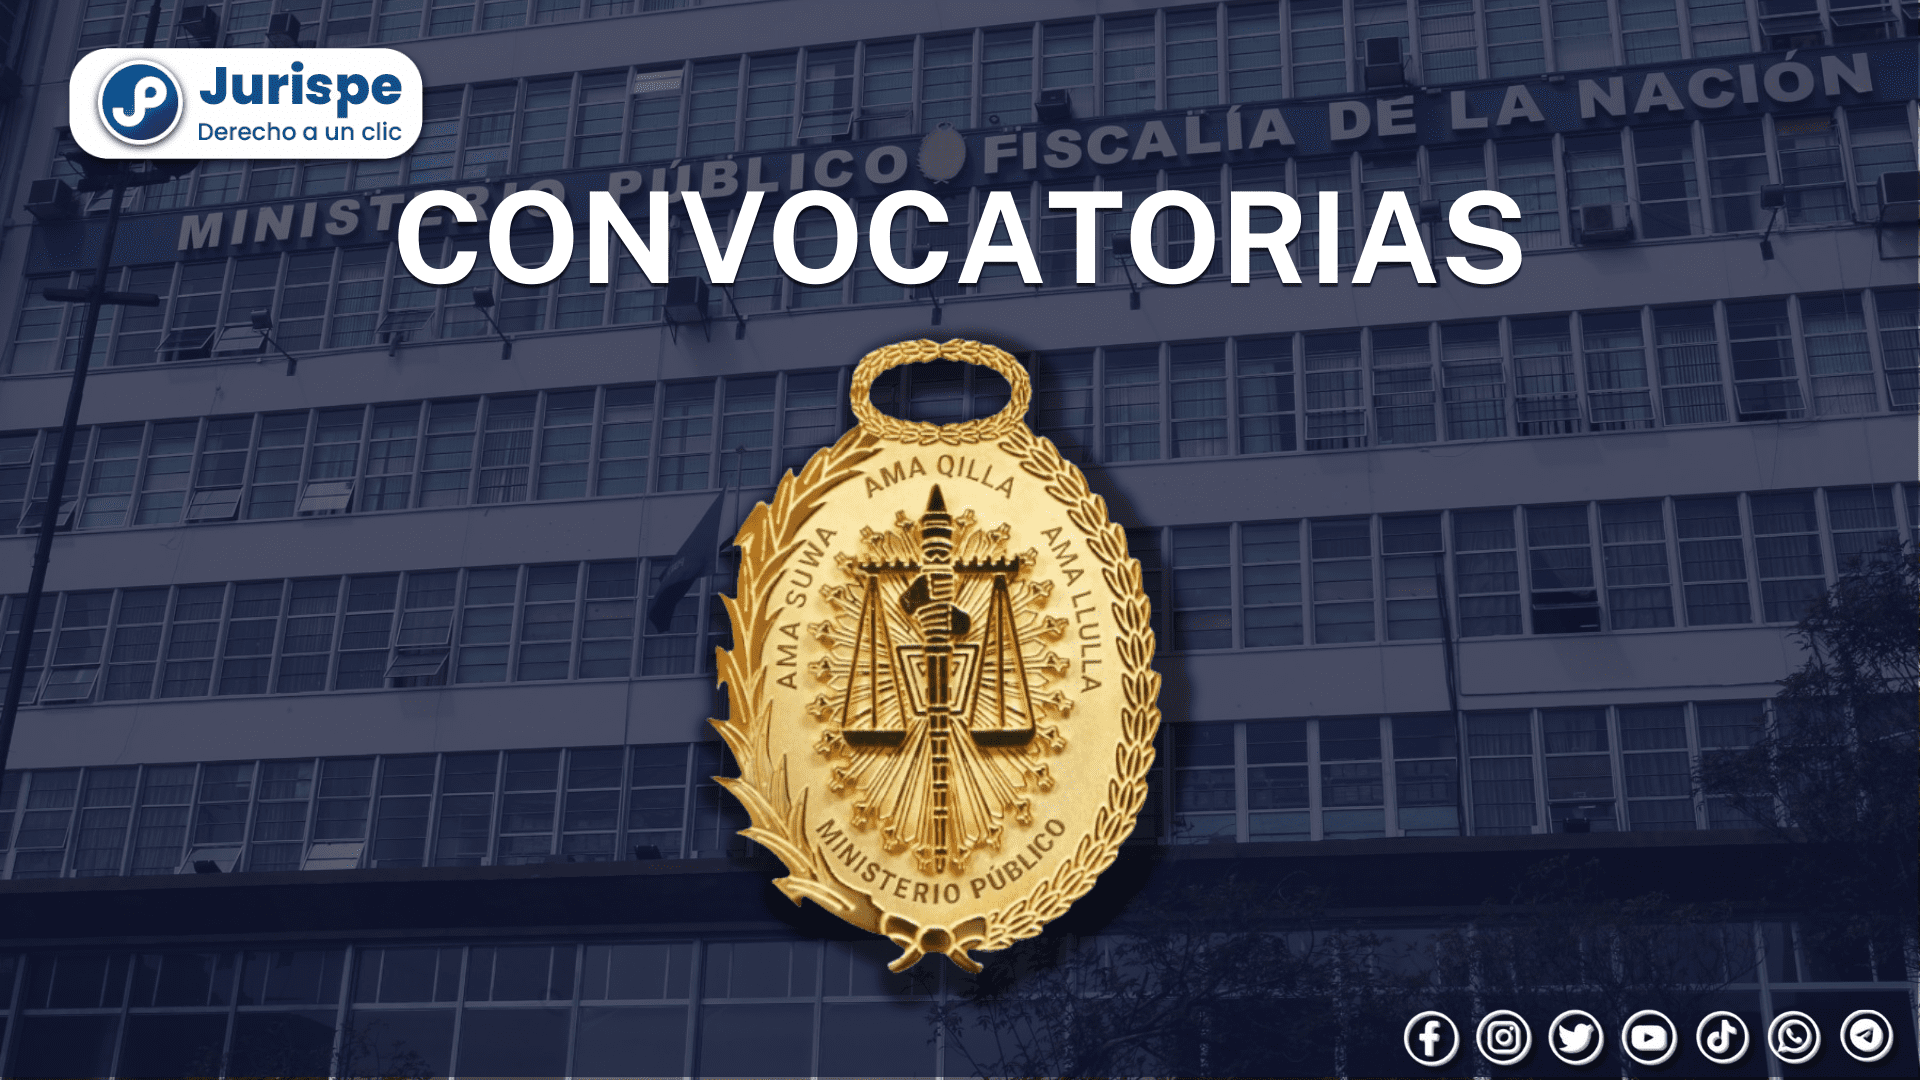 Ministerio Público lanza convocatoria laboral con sueldos superiores a 6000 soles: conoce los puestos y cómo postular